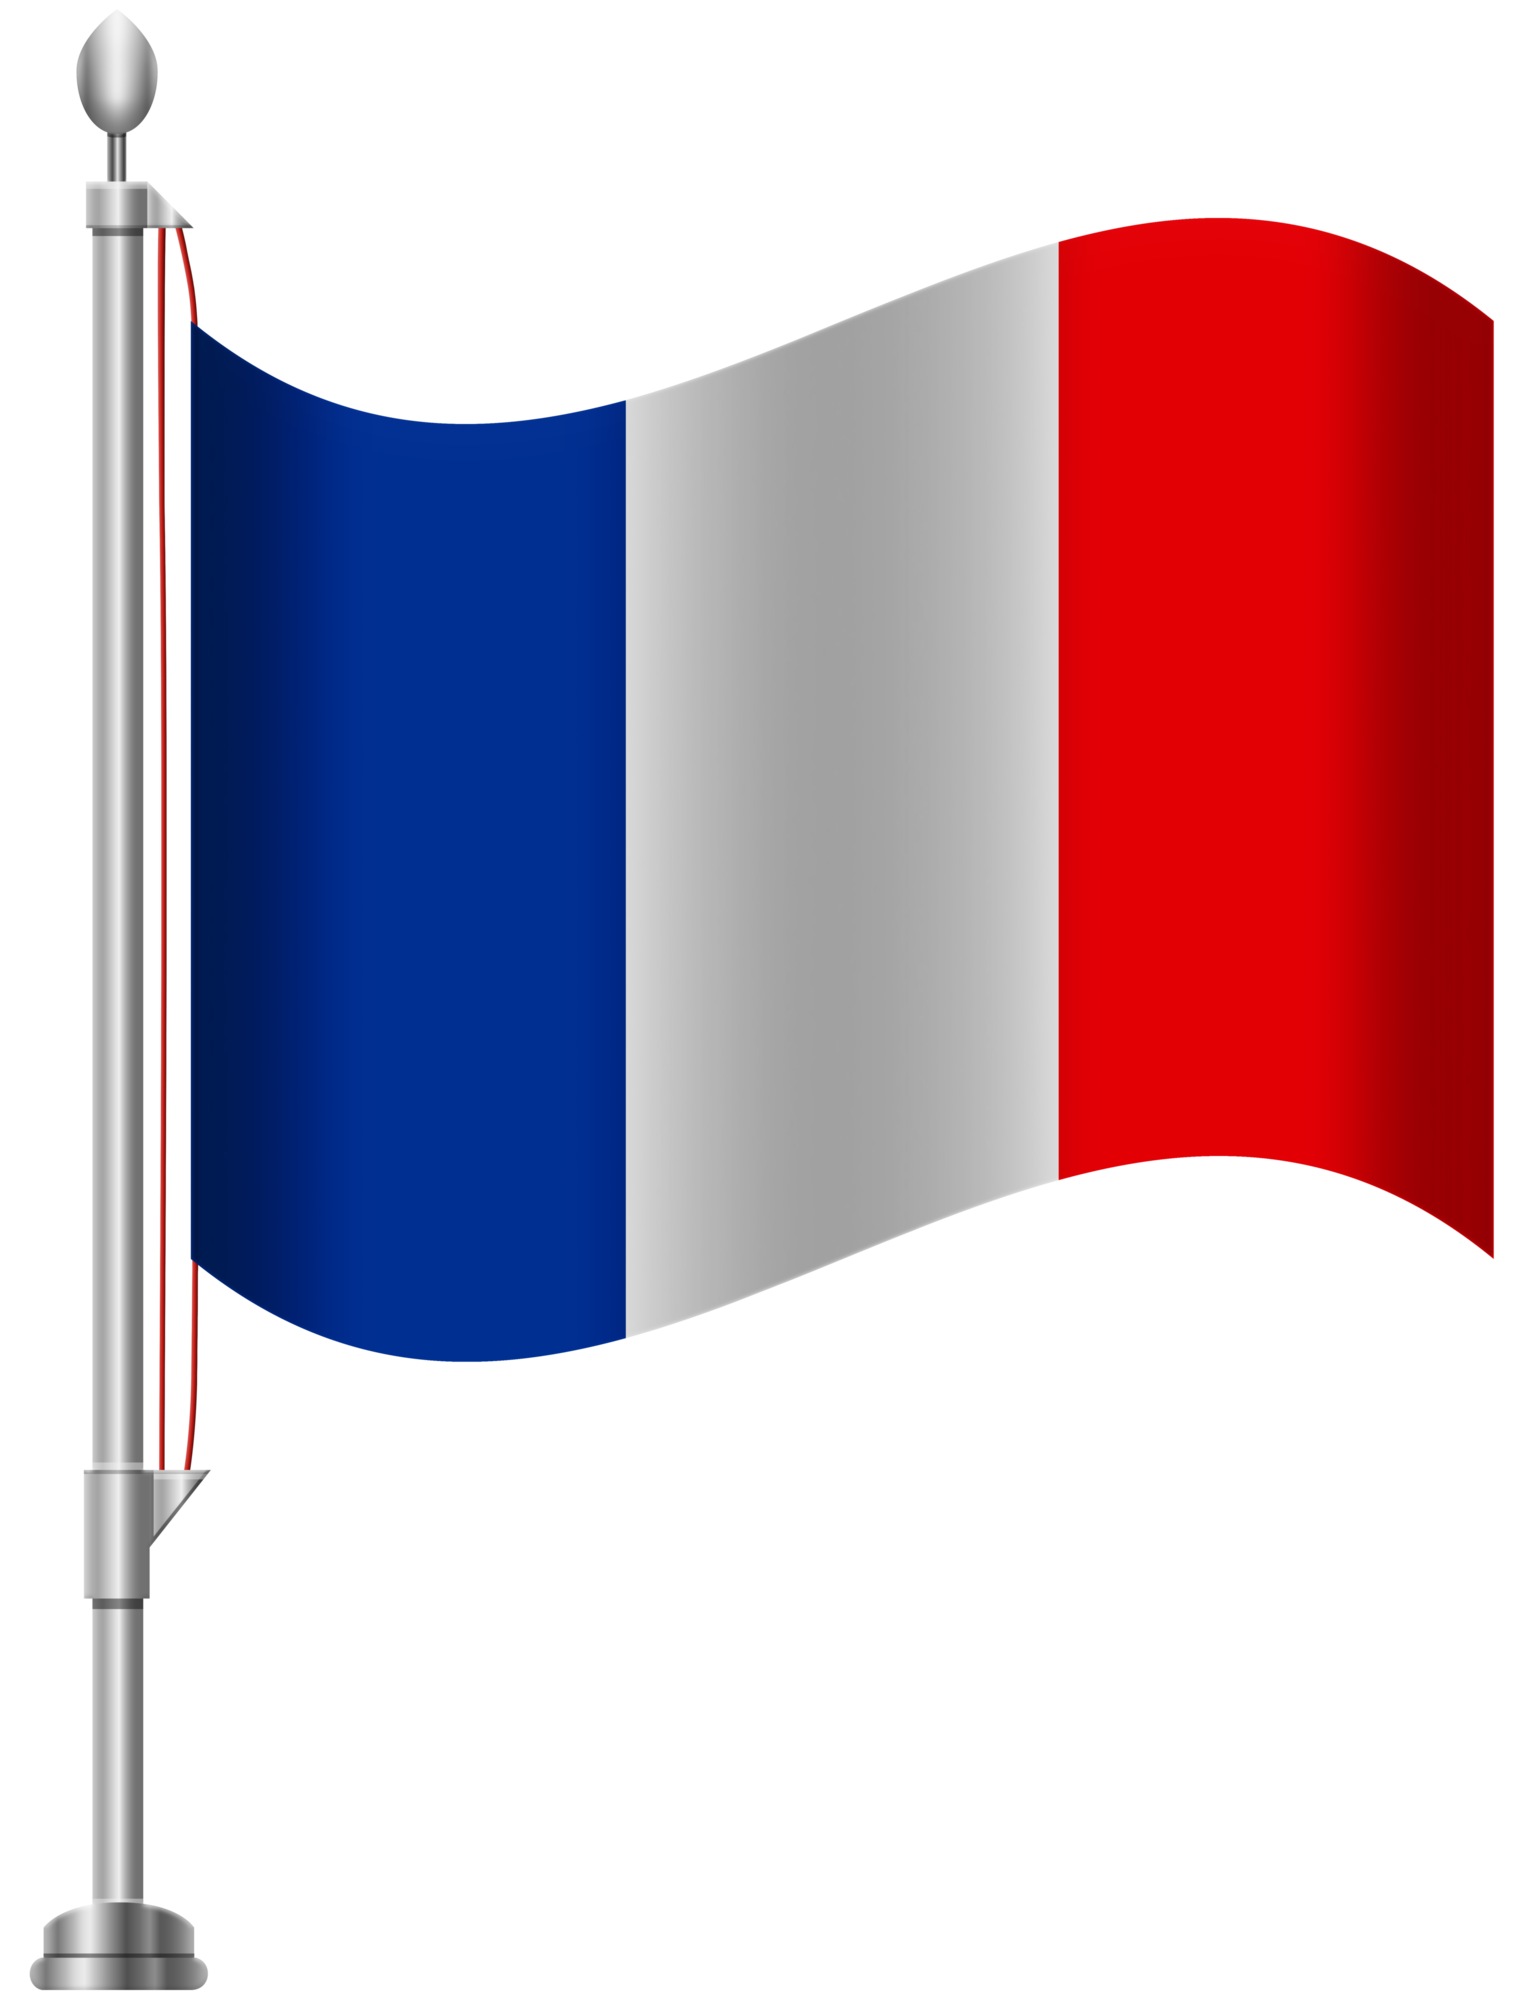 France background